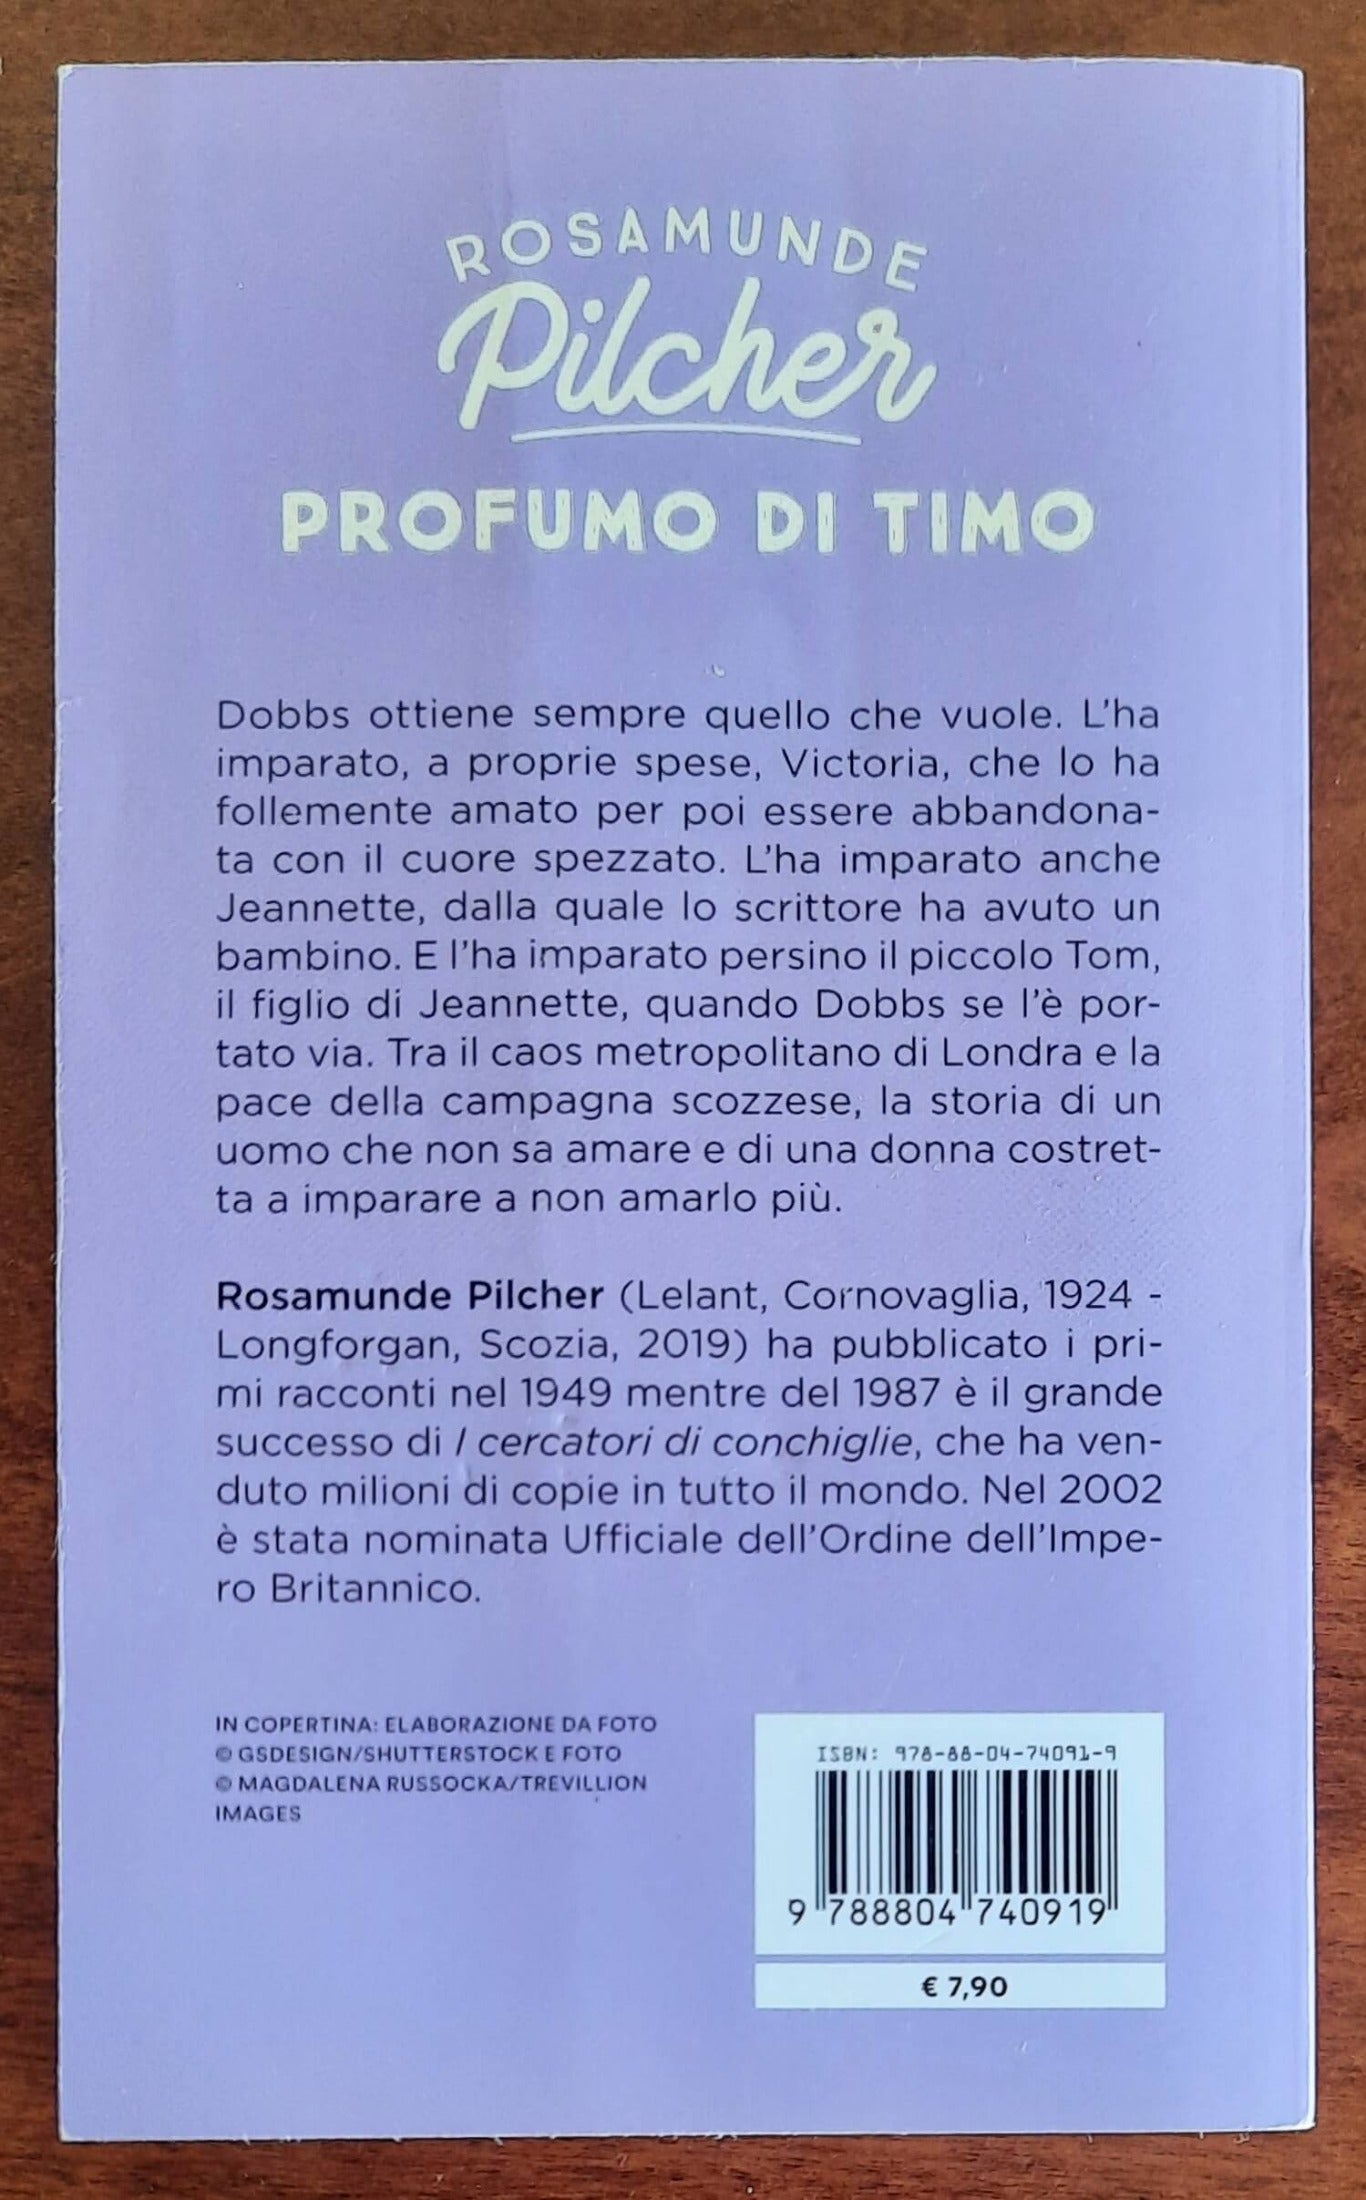 Profumo di timo - di Rosamunde Pilcher - Mondadori